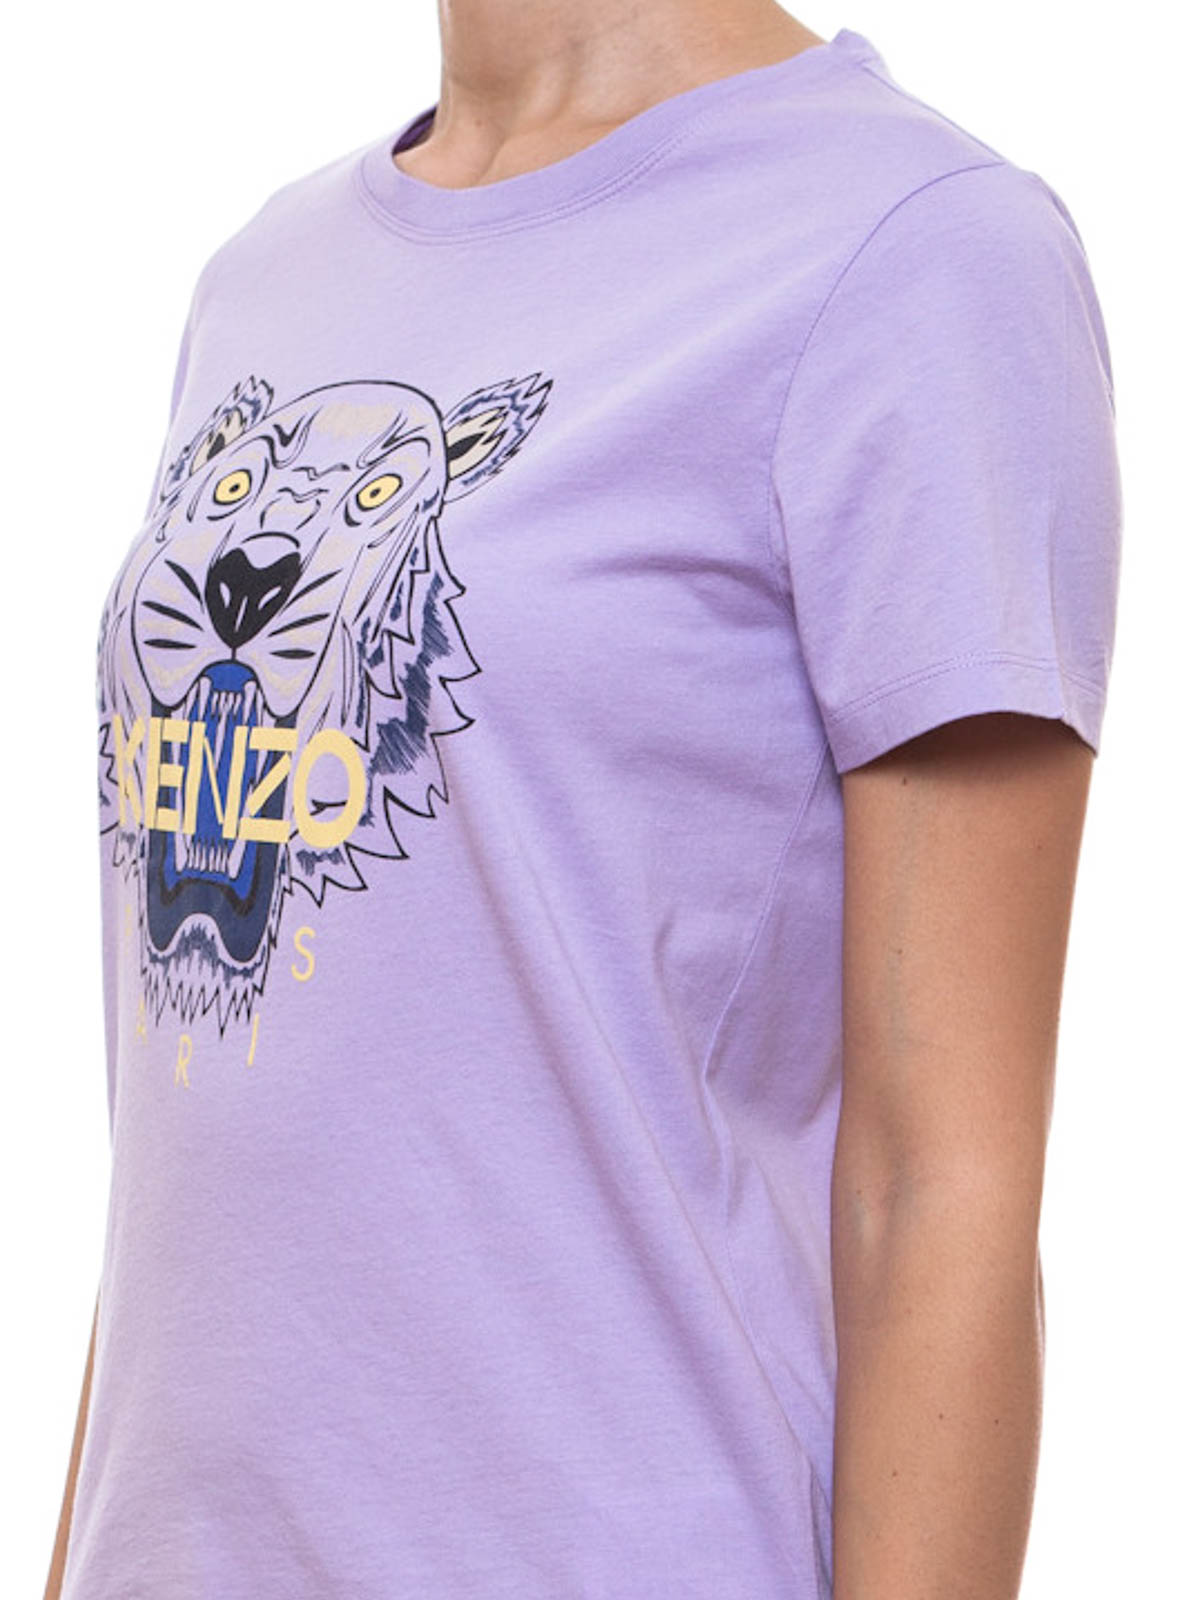 purple kenzo t shirt Off 63% - canerofset.com